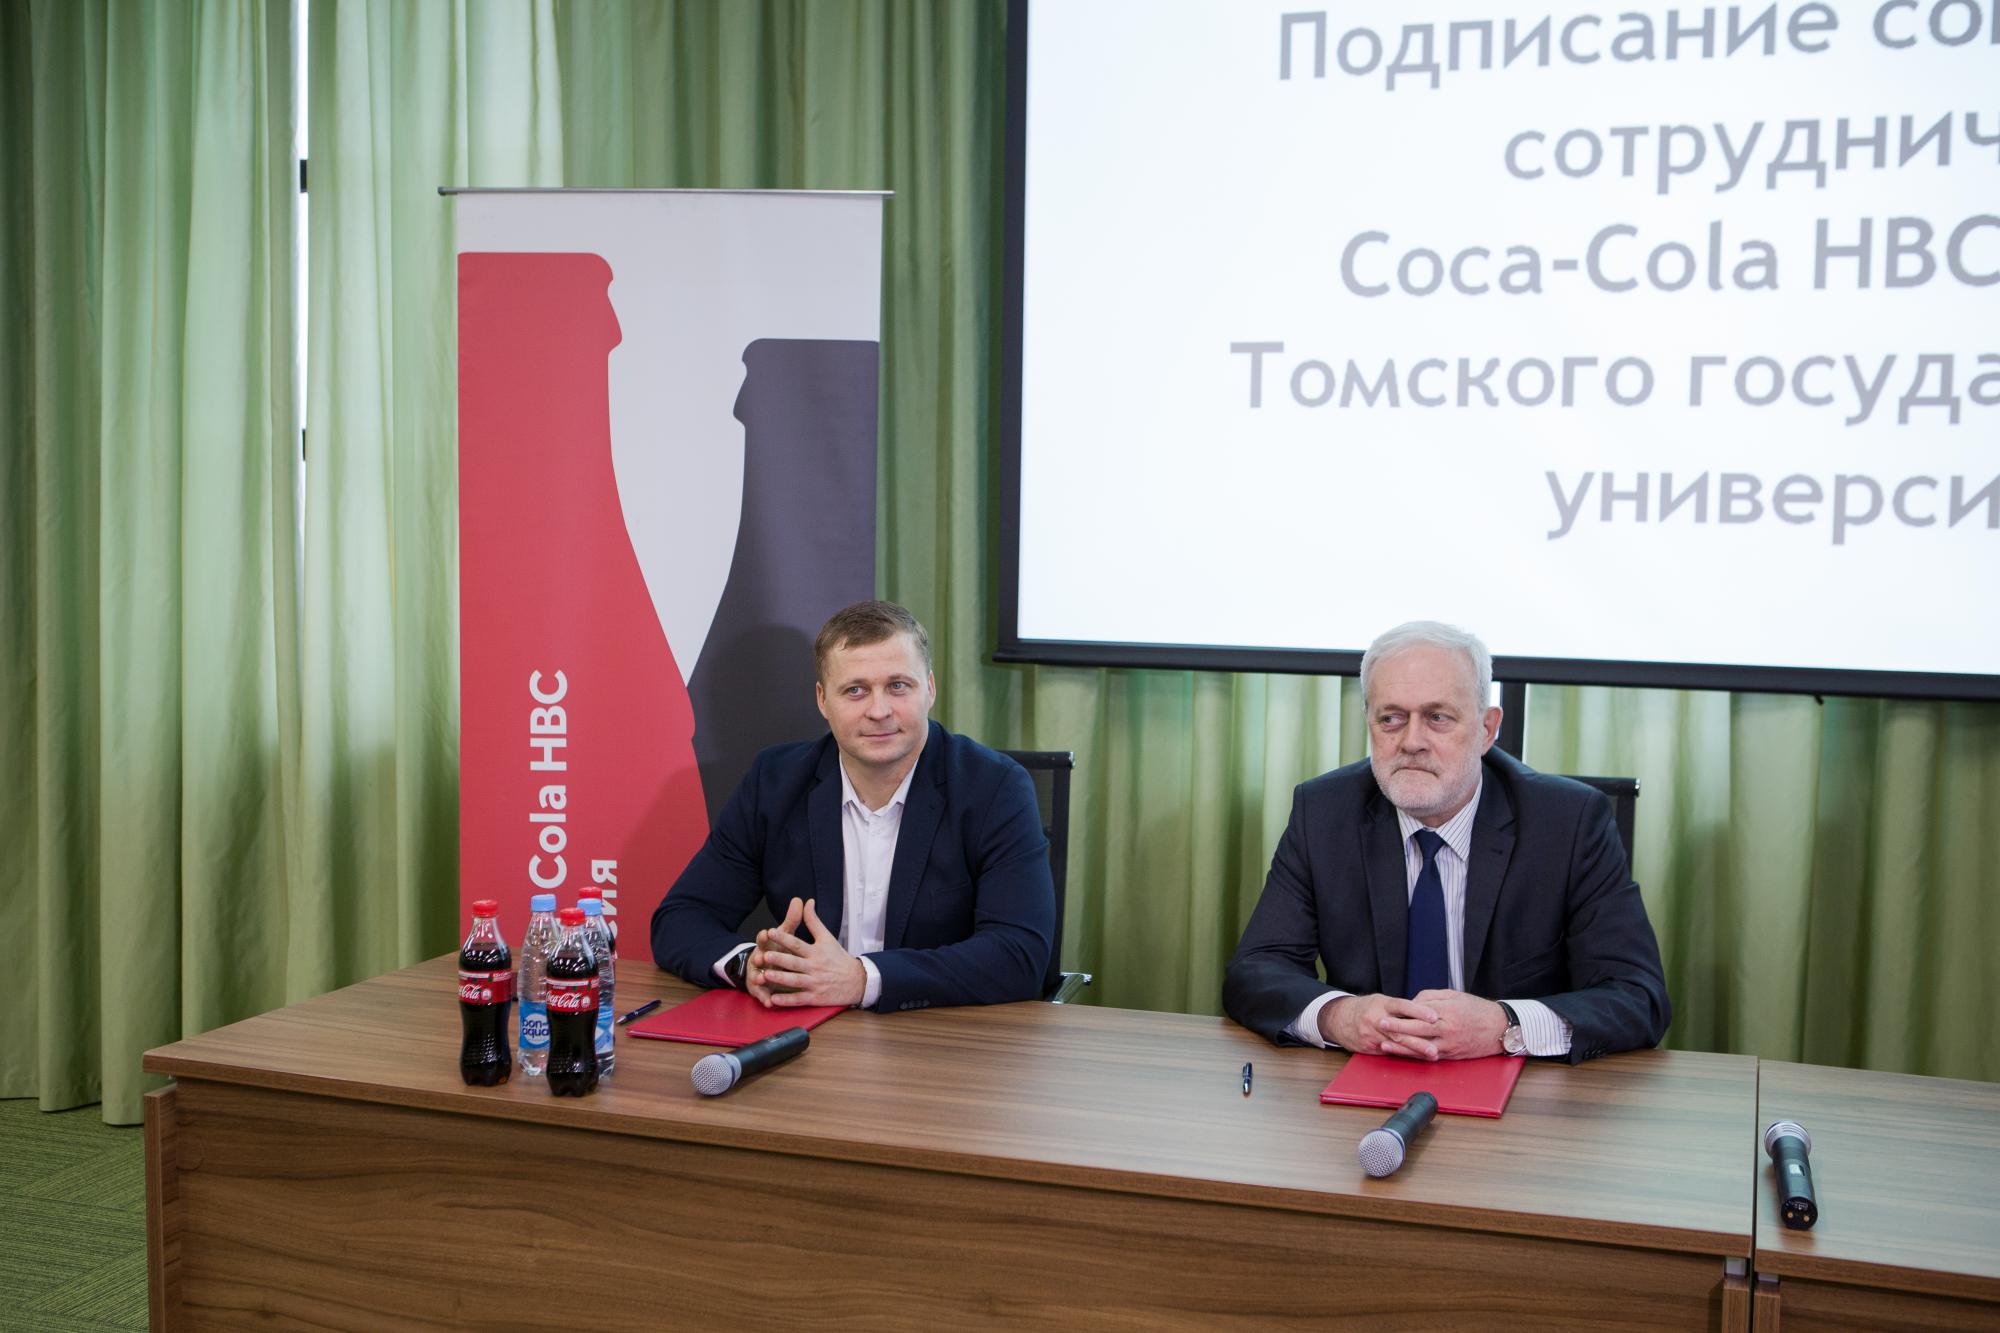 ТГУ, Томские новости, ТГУ и Coca-Cola подписали соглашение о сотрудничестве томск ТГУ и Coca-Cola подписали соглашение о сотрудничестве